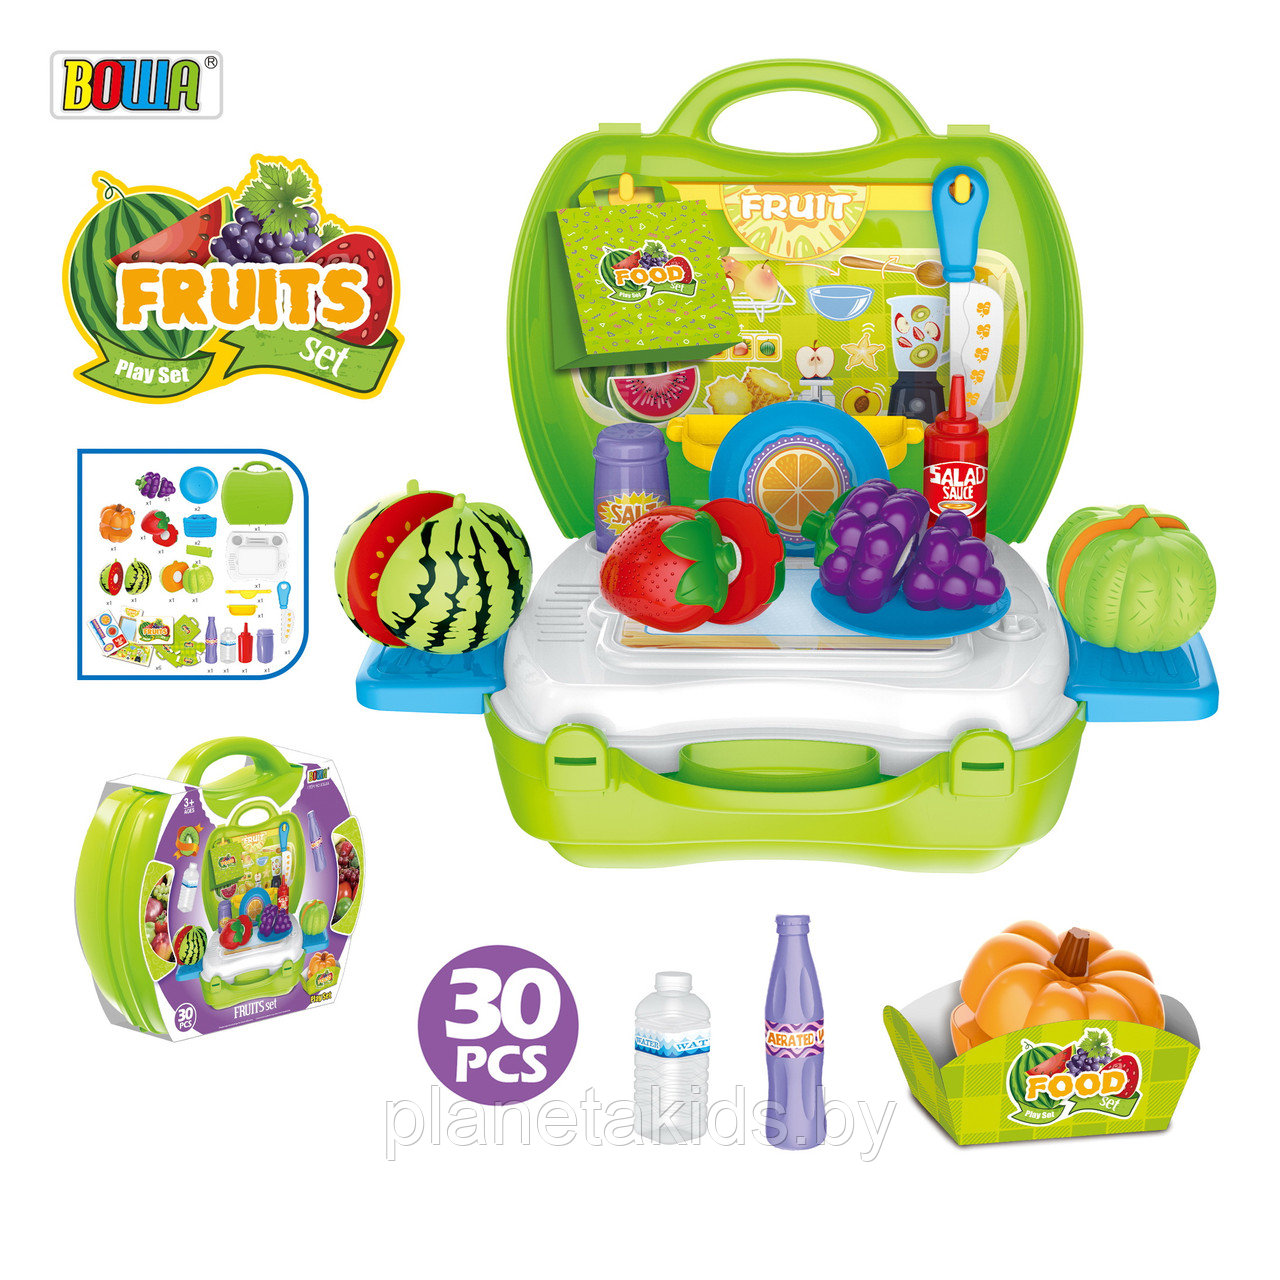 Игровой кухонный набор в чемодане, фрукты/овощи на липучках, 30 элементов, арт. 8348A